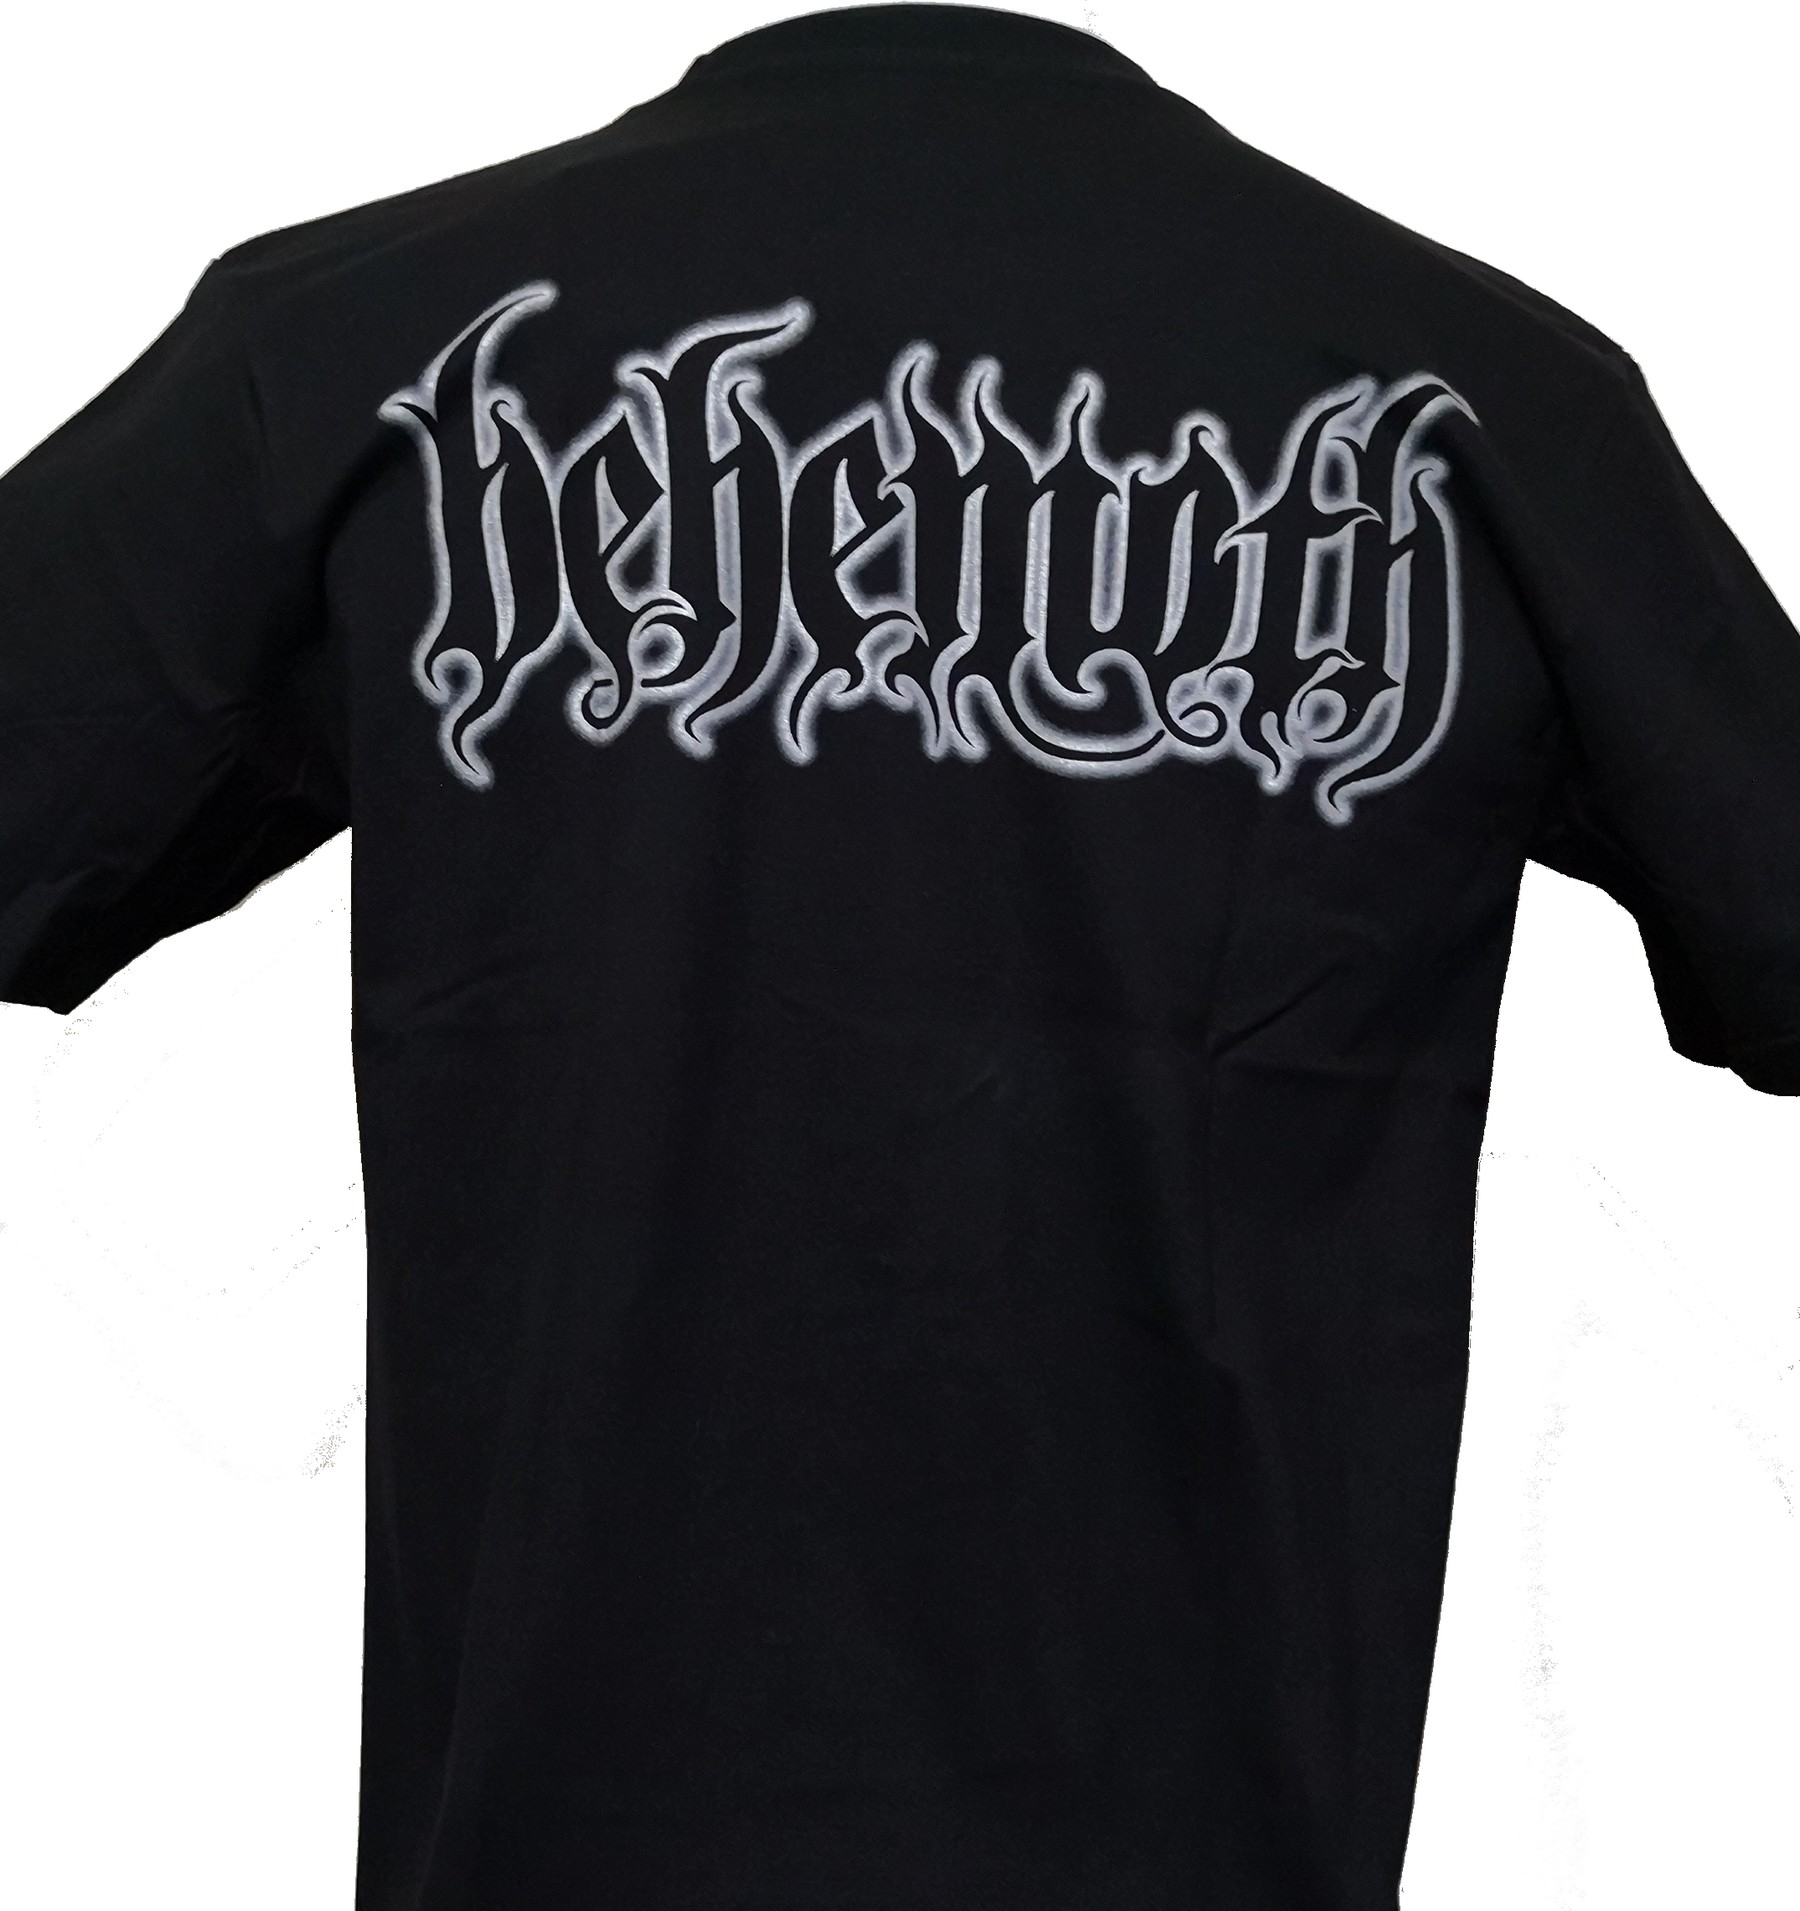 Behemoth t-shirt size M